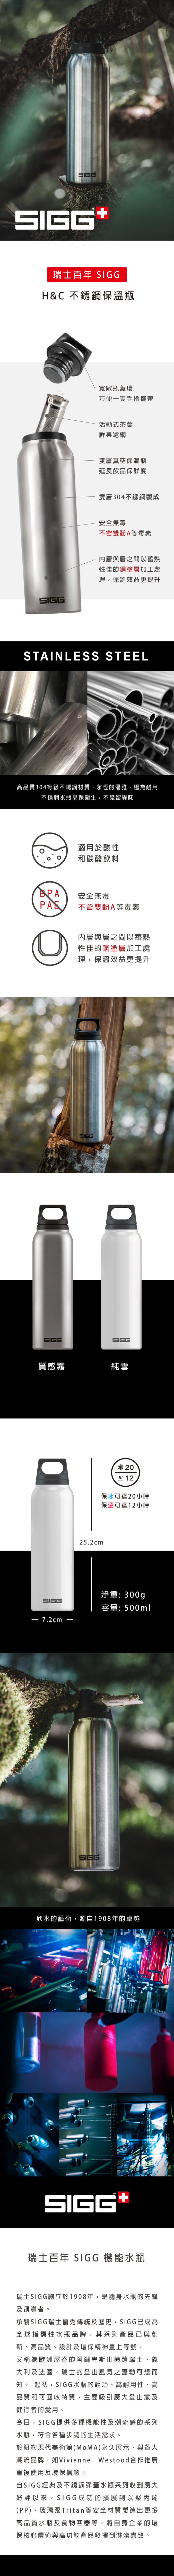 瑞士百年 SIGG H&C 不鏽鋼保溫瓶 500ml (共2色)